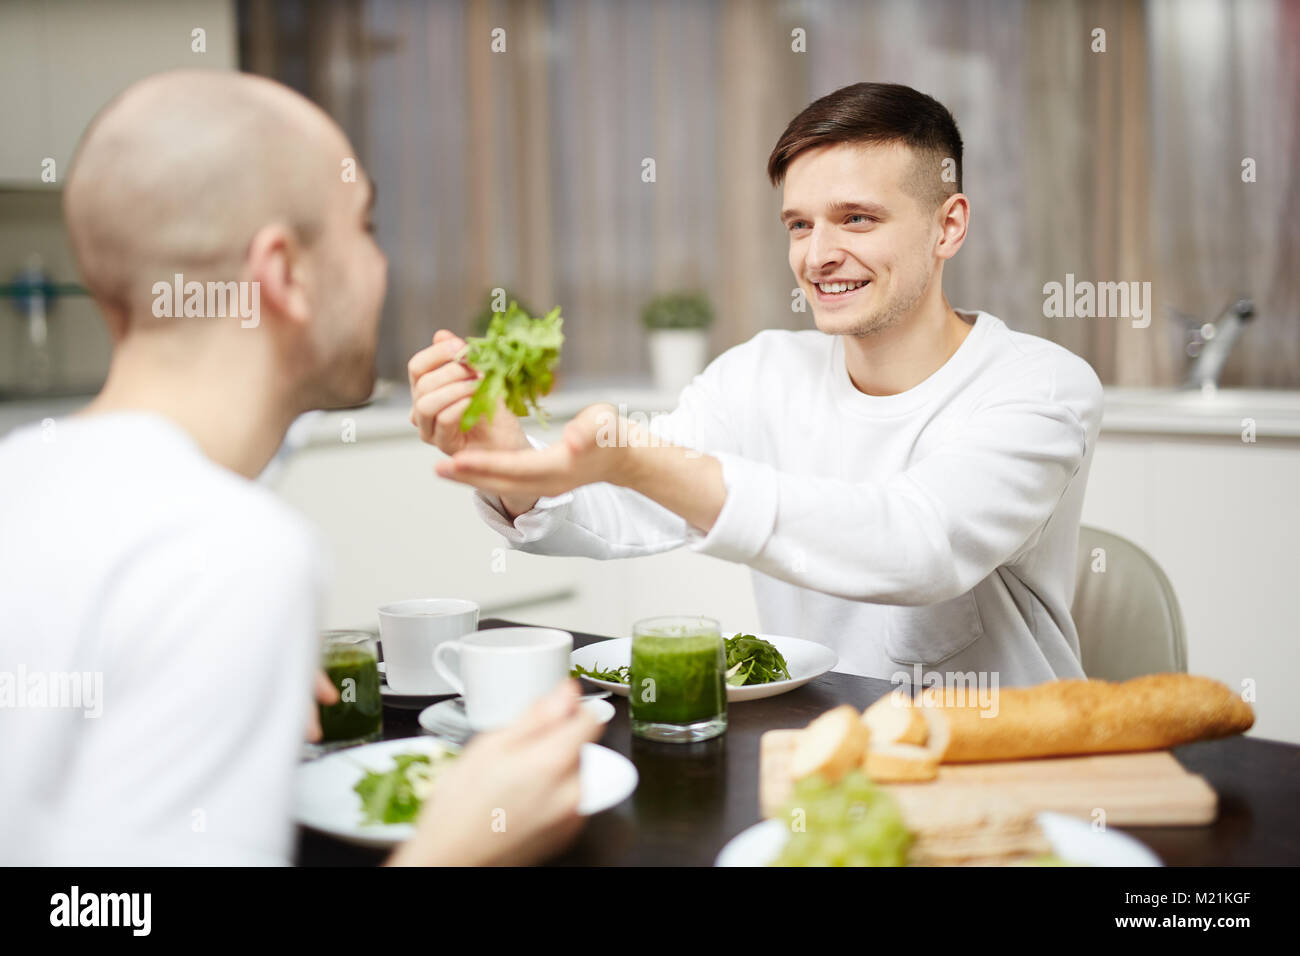 Breakfast of gay men Stock Photo